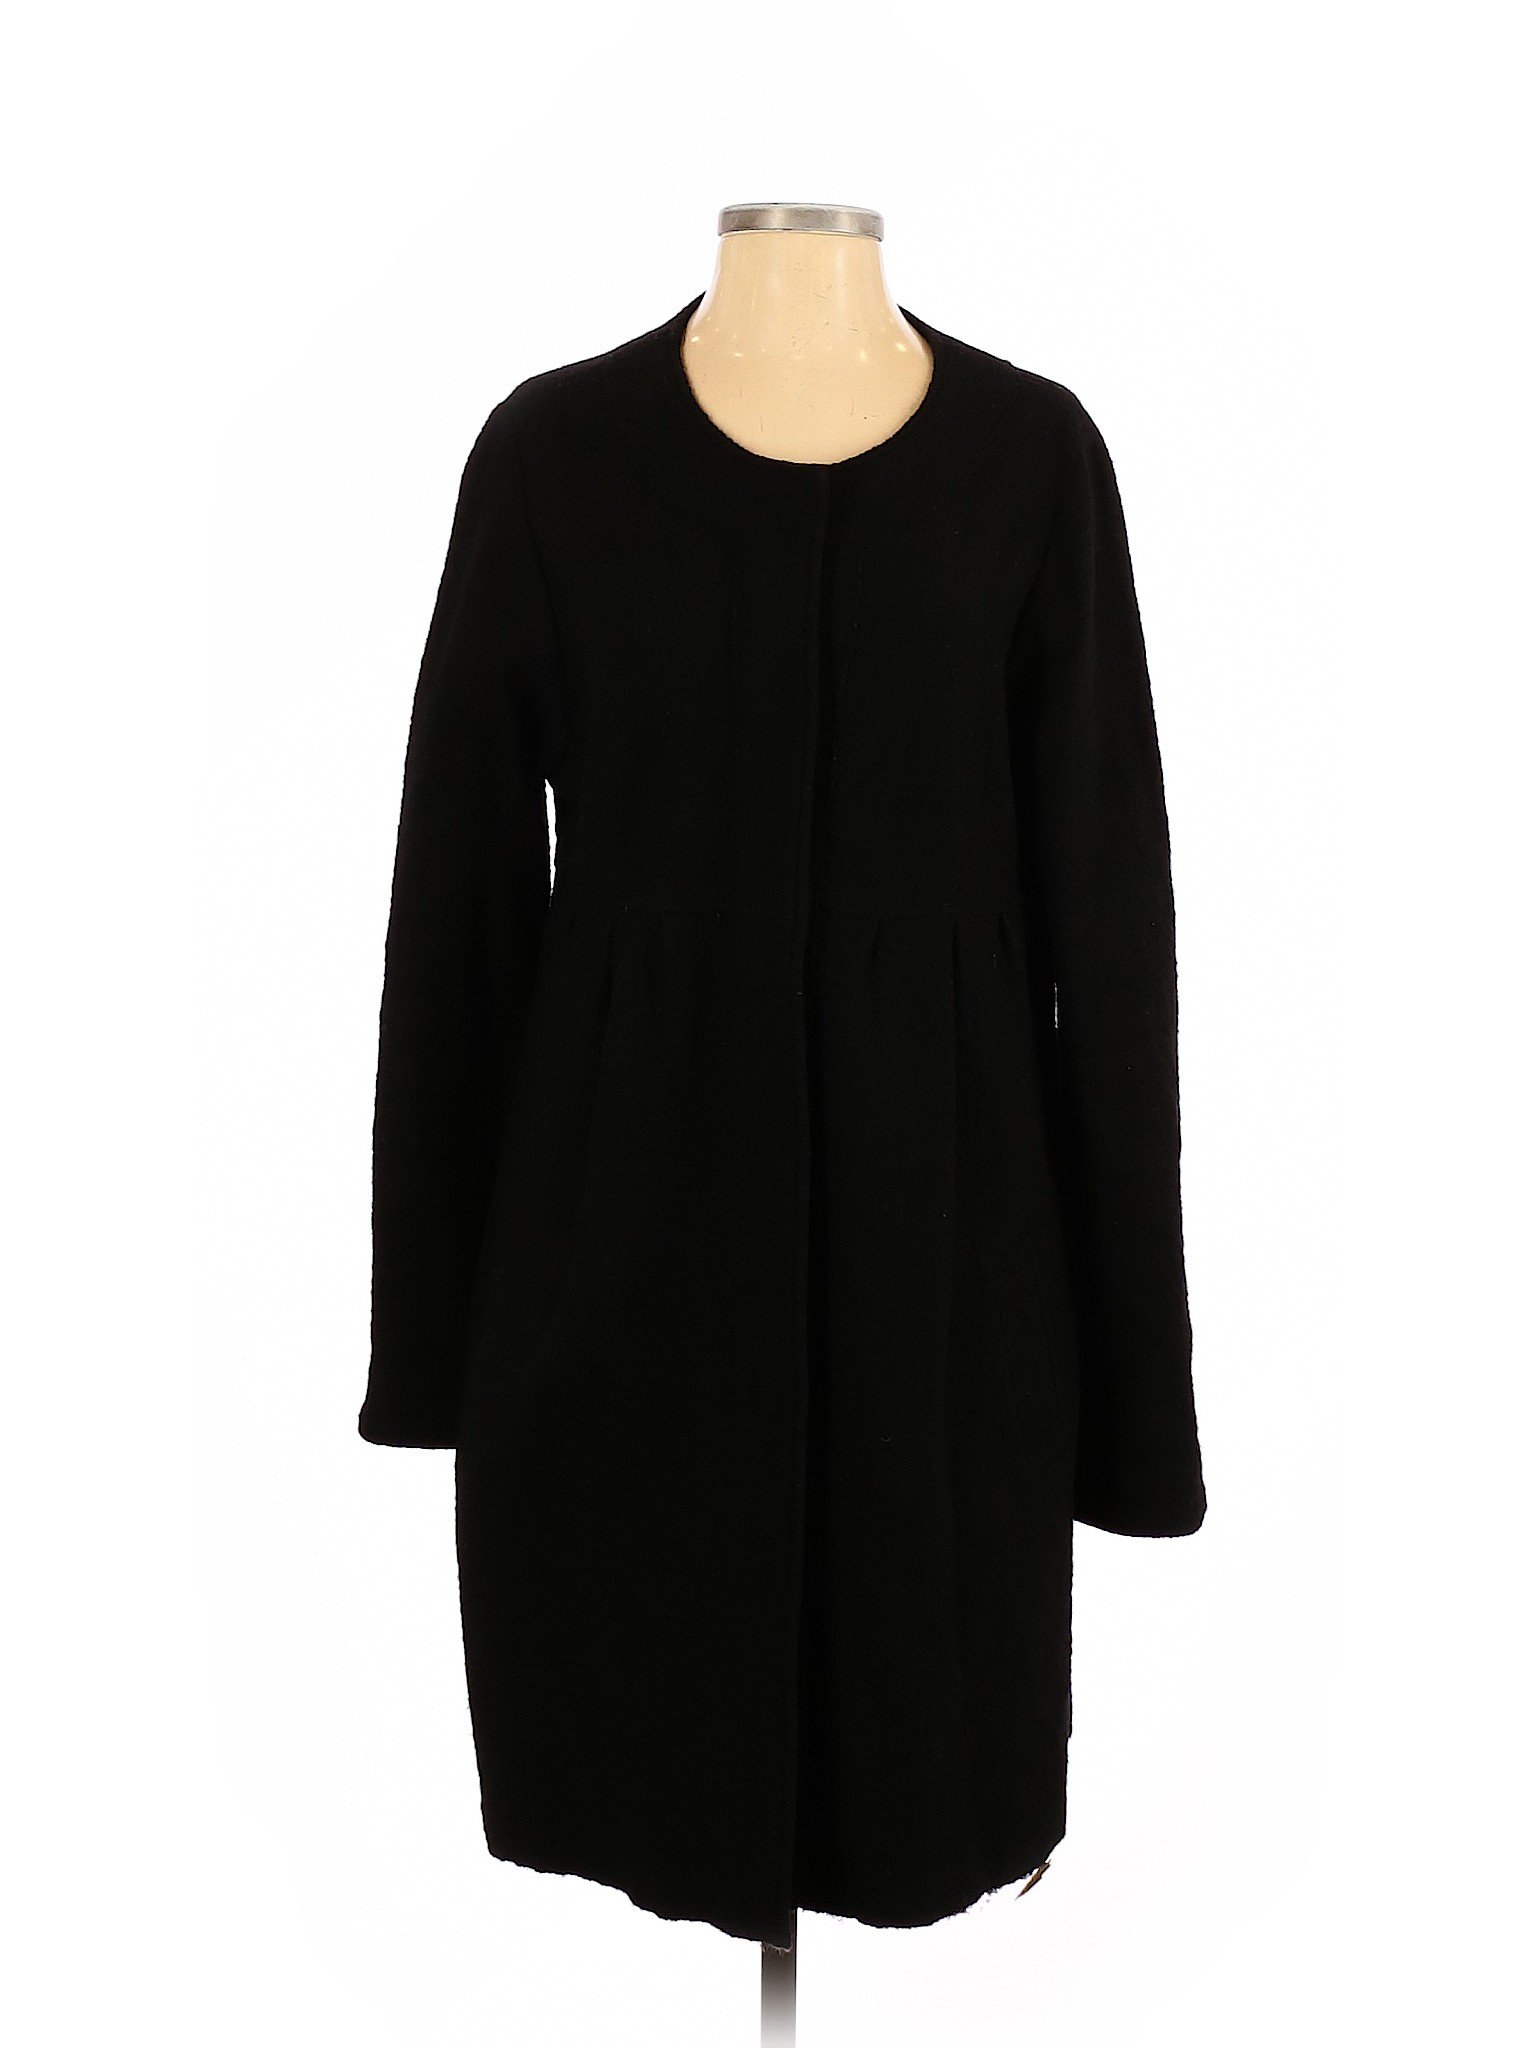 Zara Women Black Wool Coat L | eBay